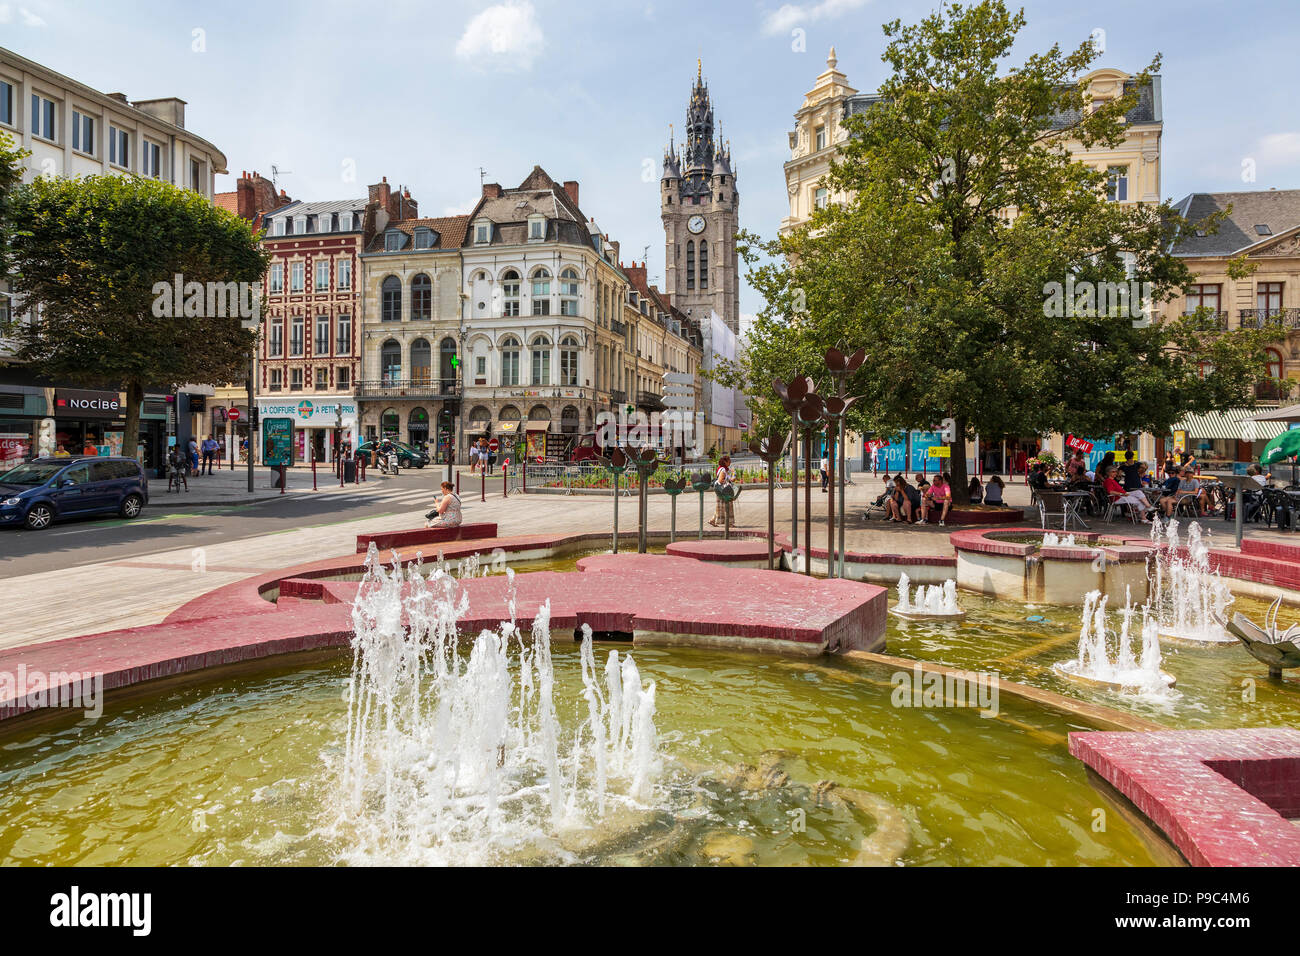 Le centre-ville de Douai avec les fontaines et les boutiques locales, Douai, Nord, Picardie, France Banque D'Images